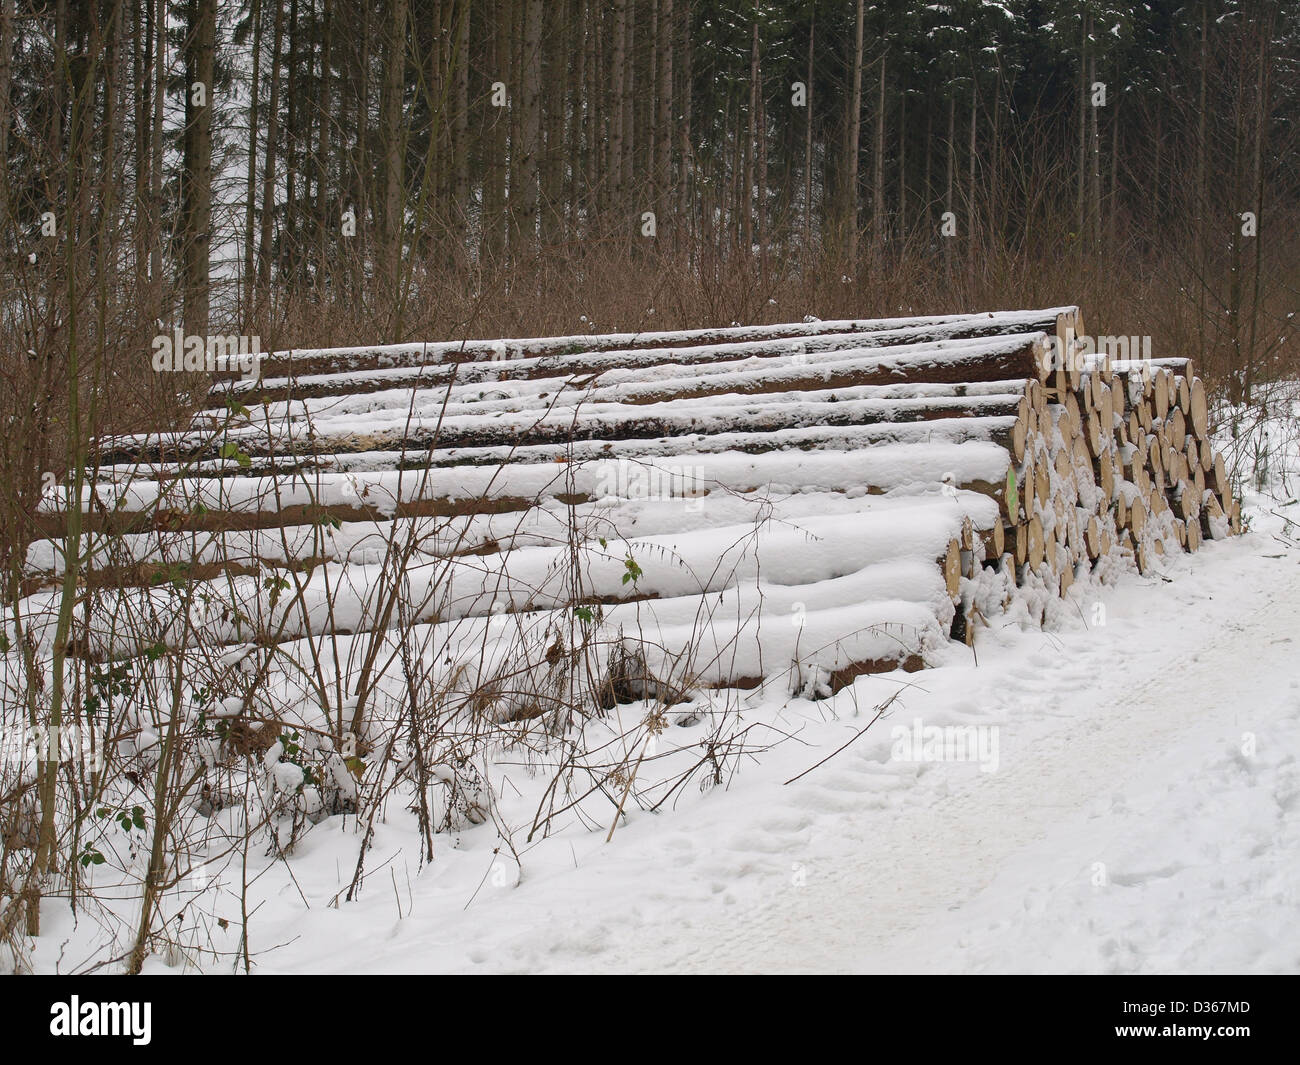 lumberyard - snowbound cut logs in the wood / Holzlager - verschneite, gefällte Baumstämme im Wald Stock Photo